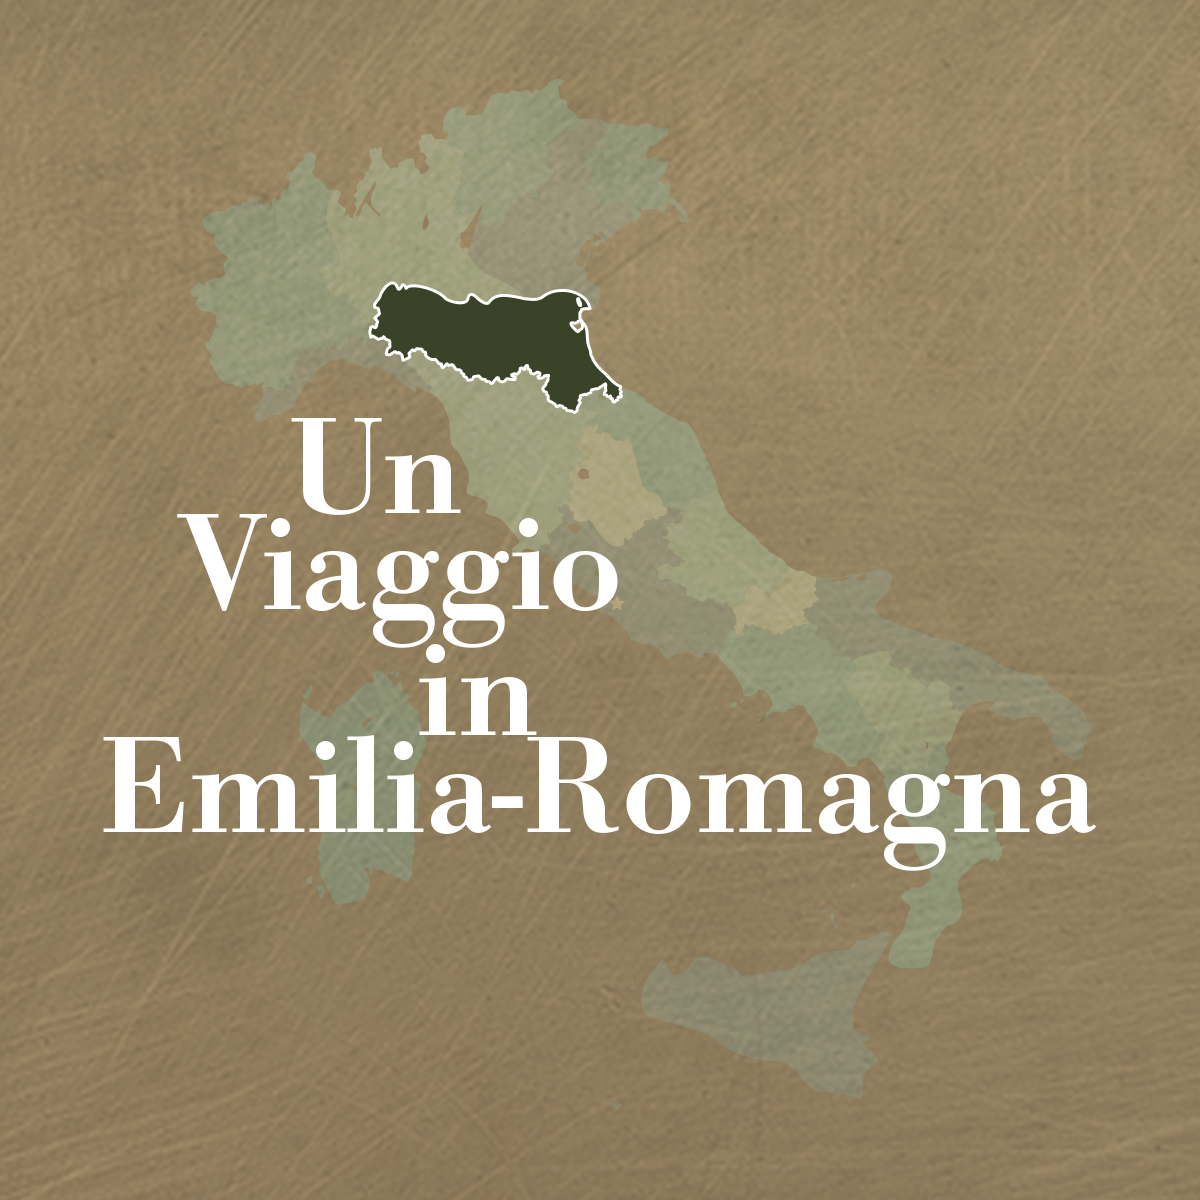 Tour of Italy - Emilia-Romagna